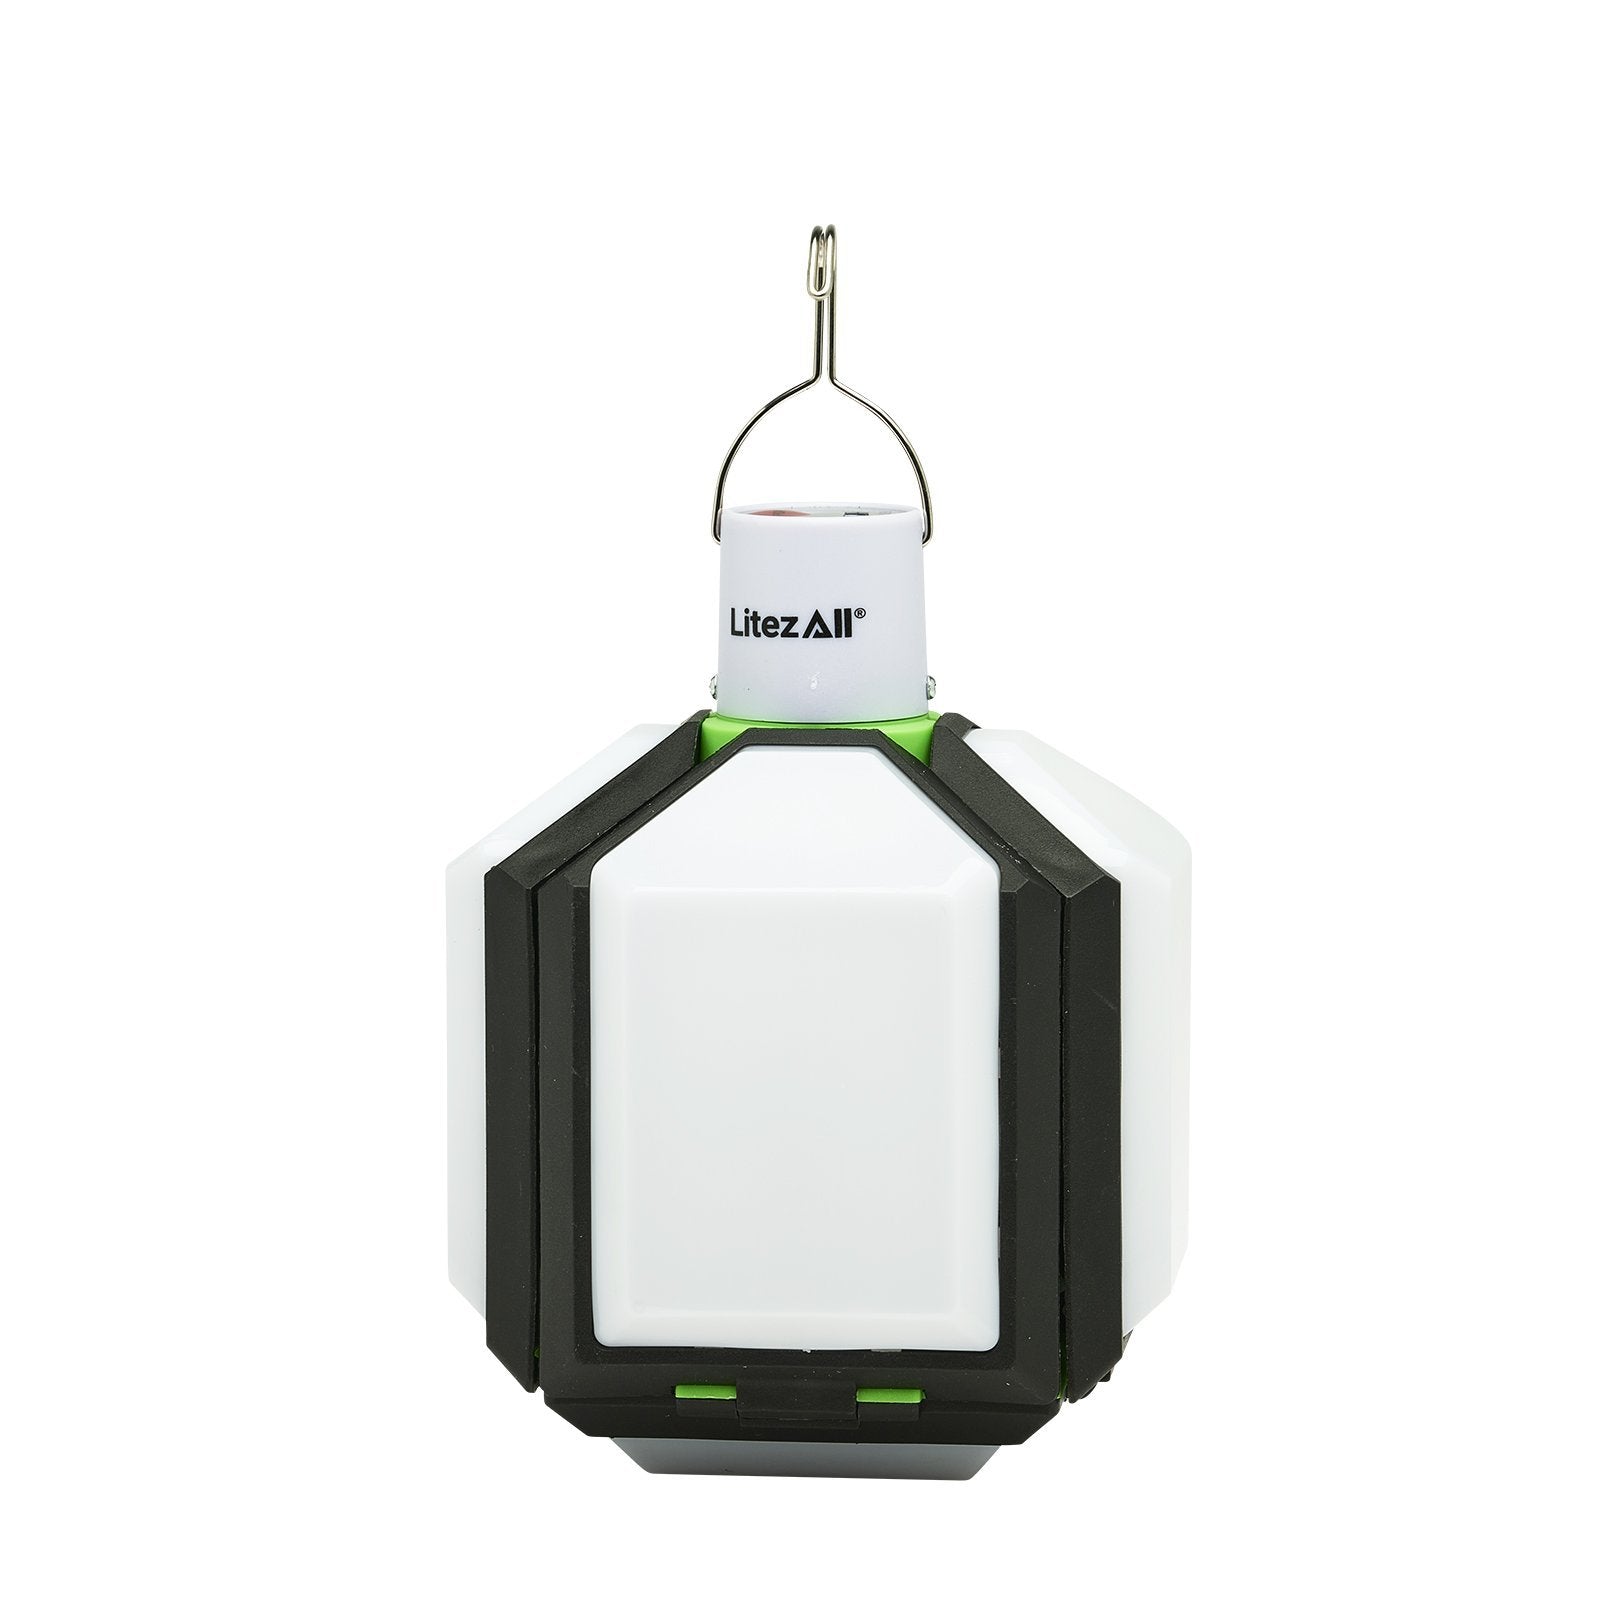 LitezAll Rechargeable Lantern with Fold-Out Panels - LitezAll - Lanterns - 20